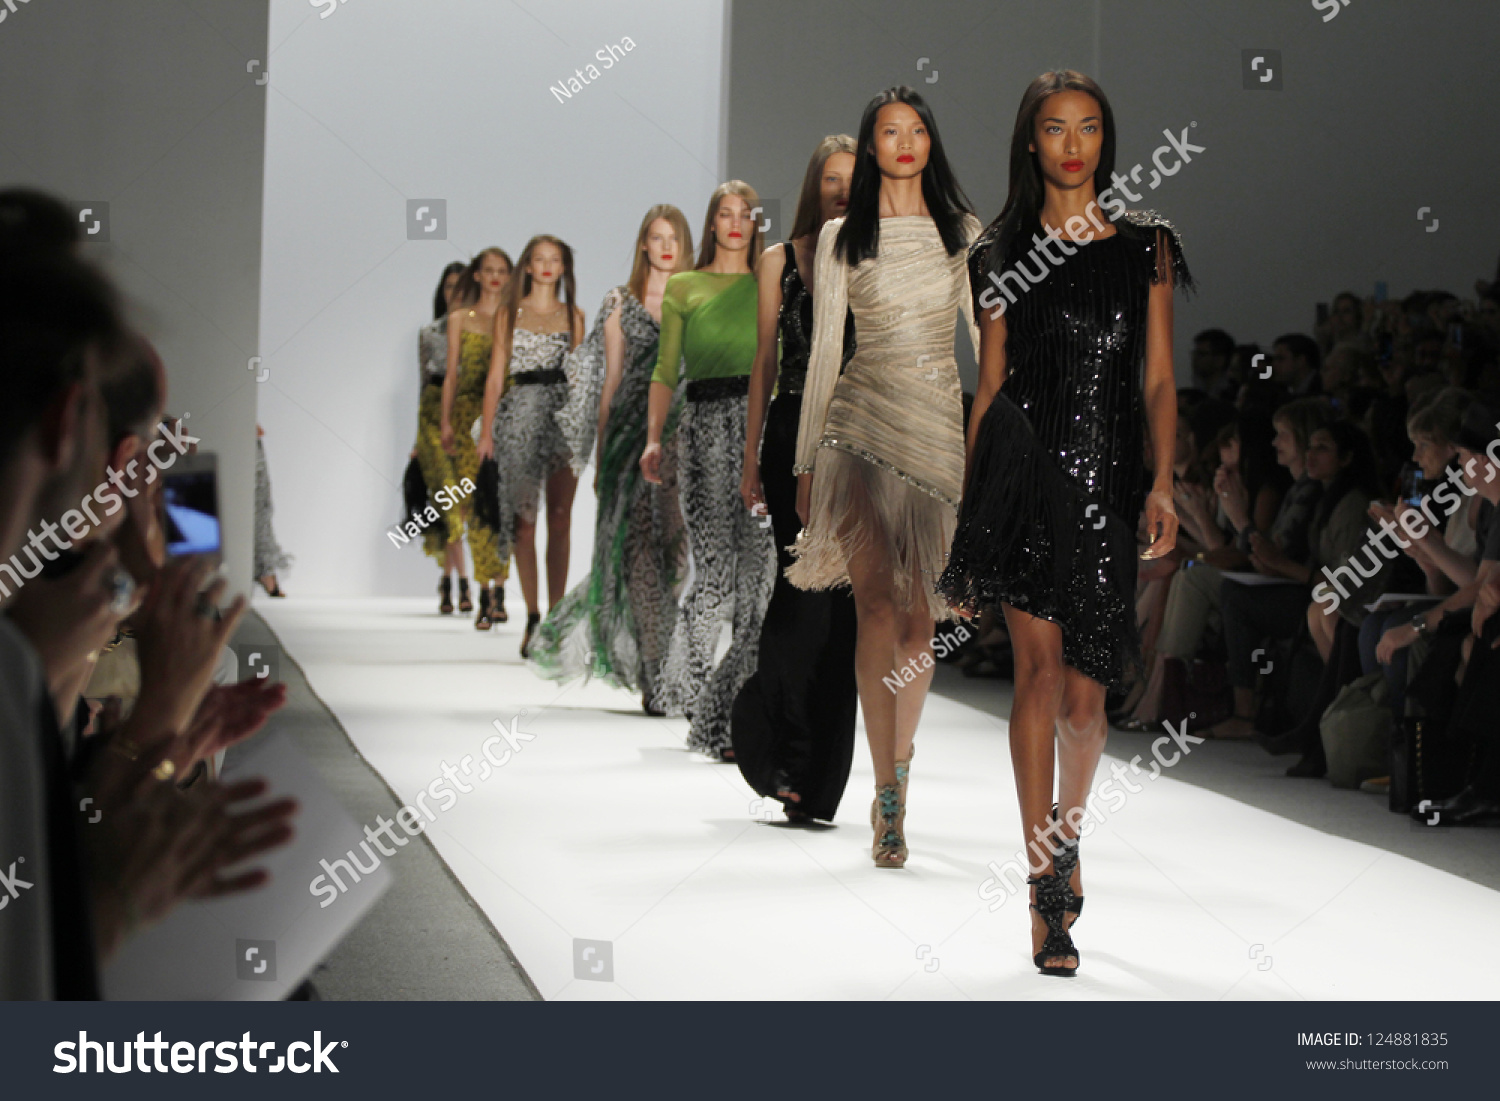 New York Ny September 10 Models Stock Photo 124881835 | Shutterstock